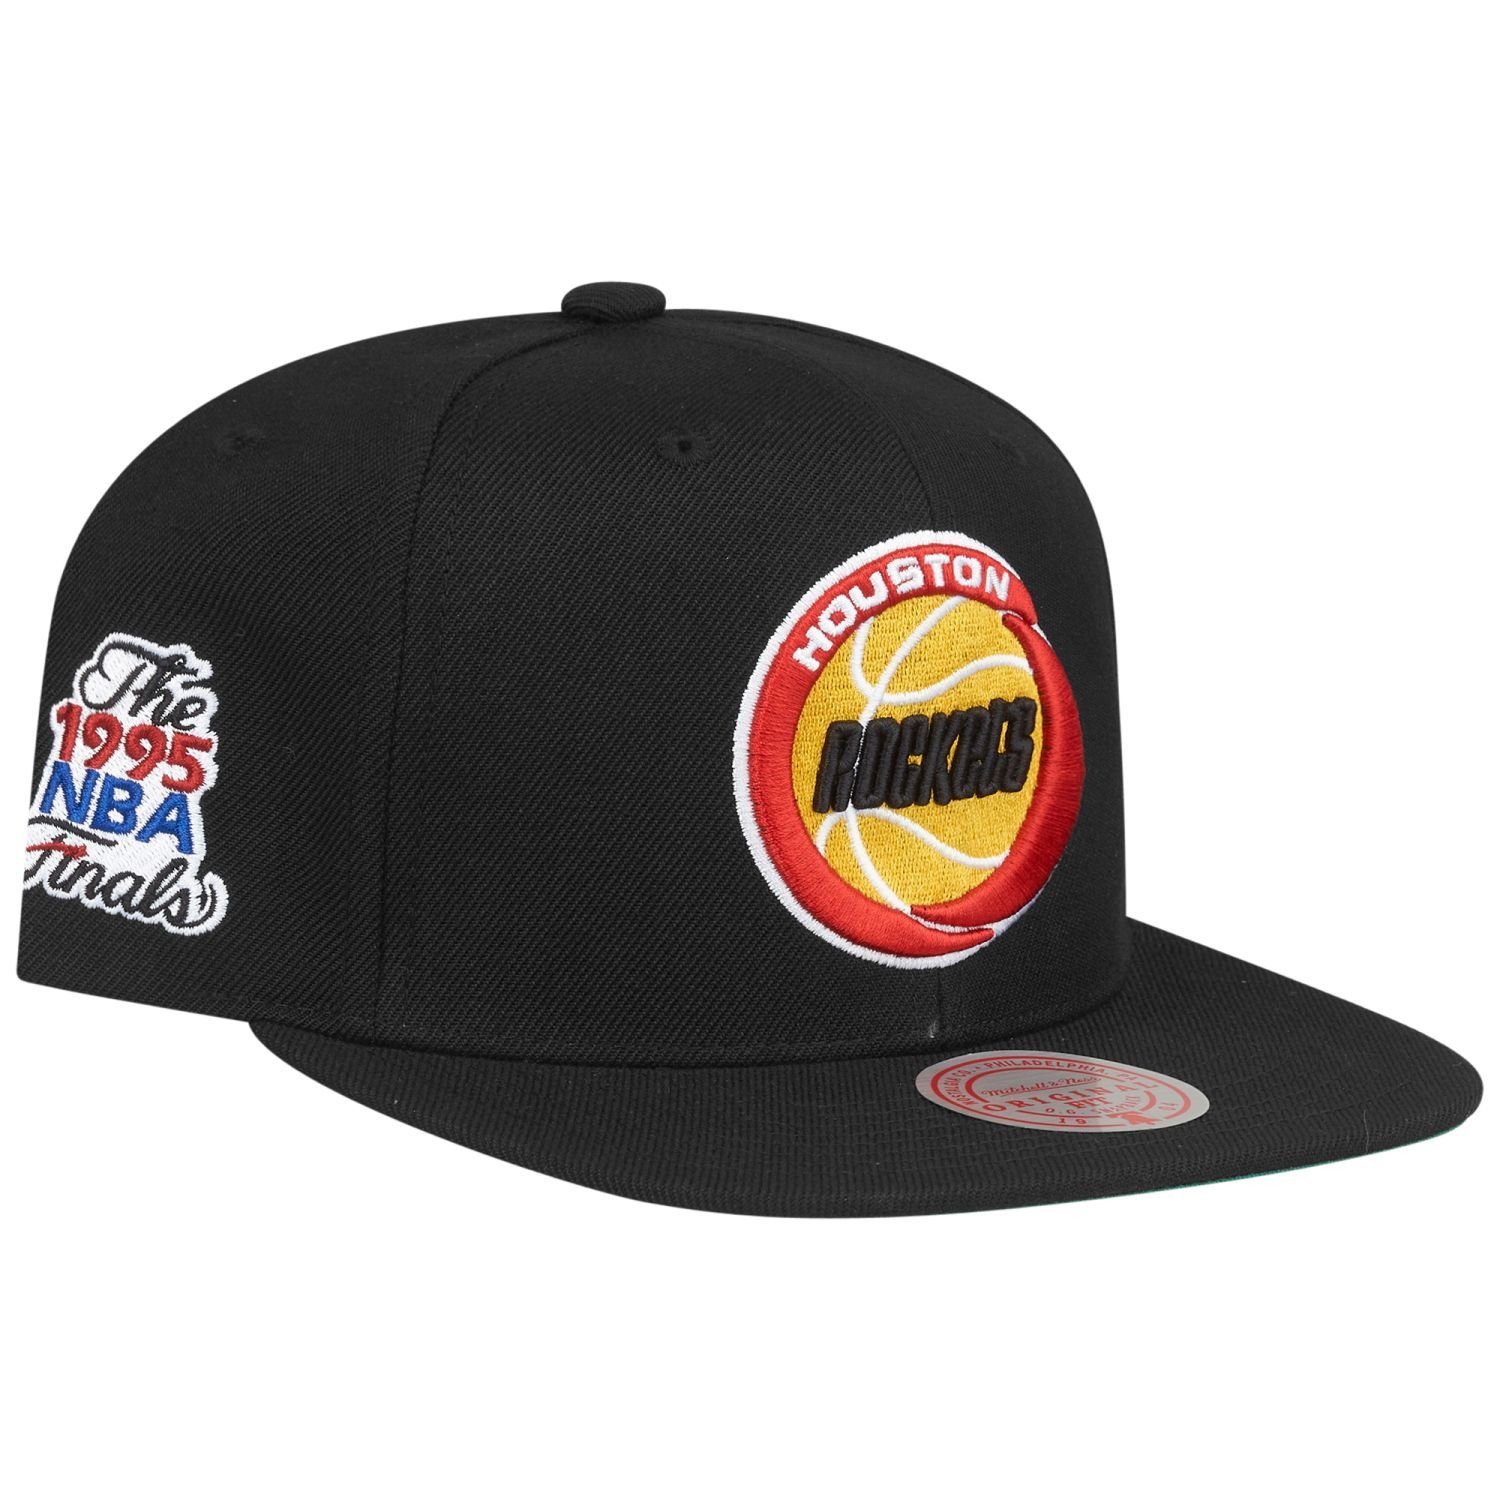 Mitchell & Ness Snapback Cap SPOT Houston Rockets 1995 | Snapback Caps